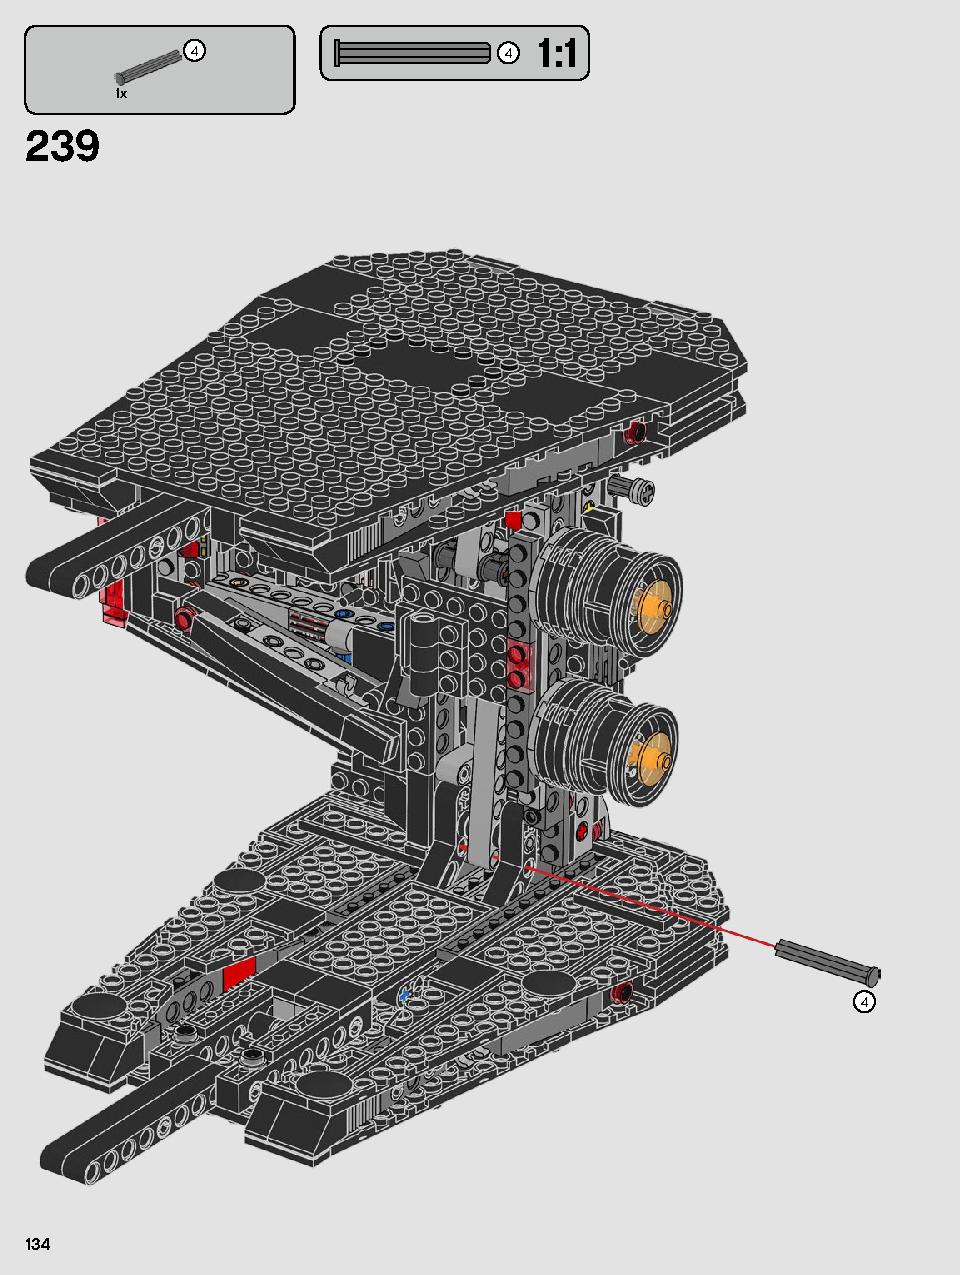 스타워즈 카일로 렌의 셔틀™ 75256 레고 세트 제품정보 레고 조립설명서 134 page